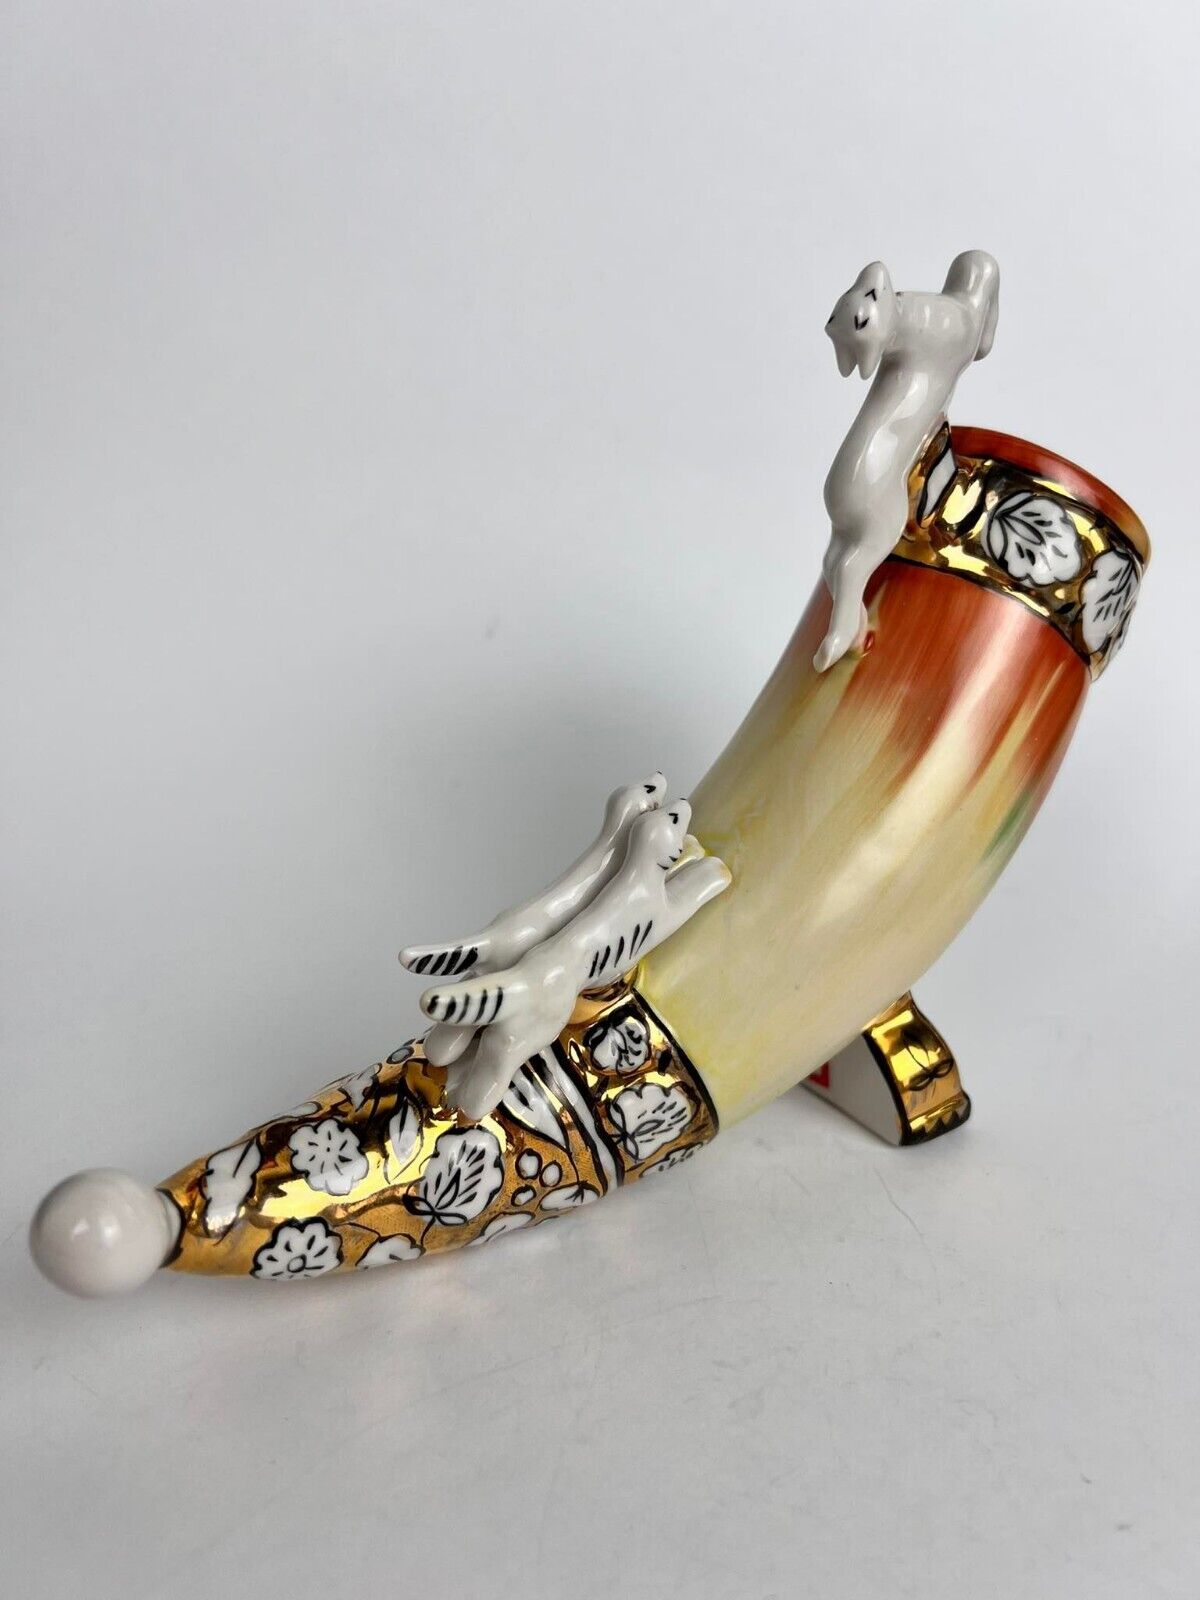  Horn Hunting Figure Vintage Handmade Porcelain Ussr Ukraine Decor Collectibles